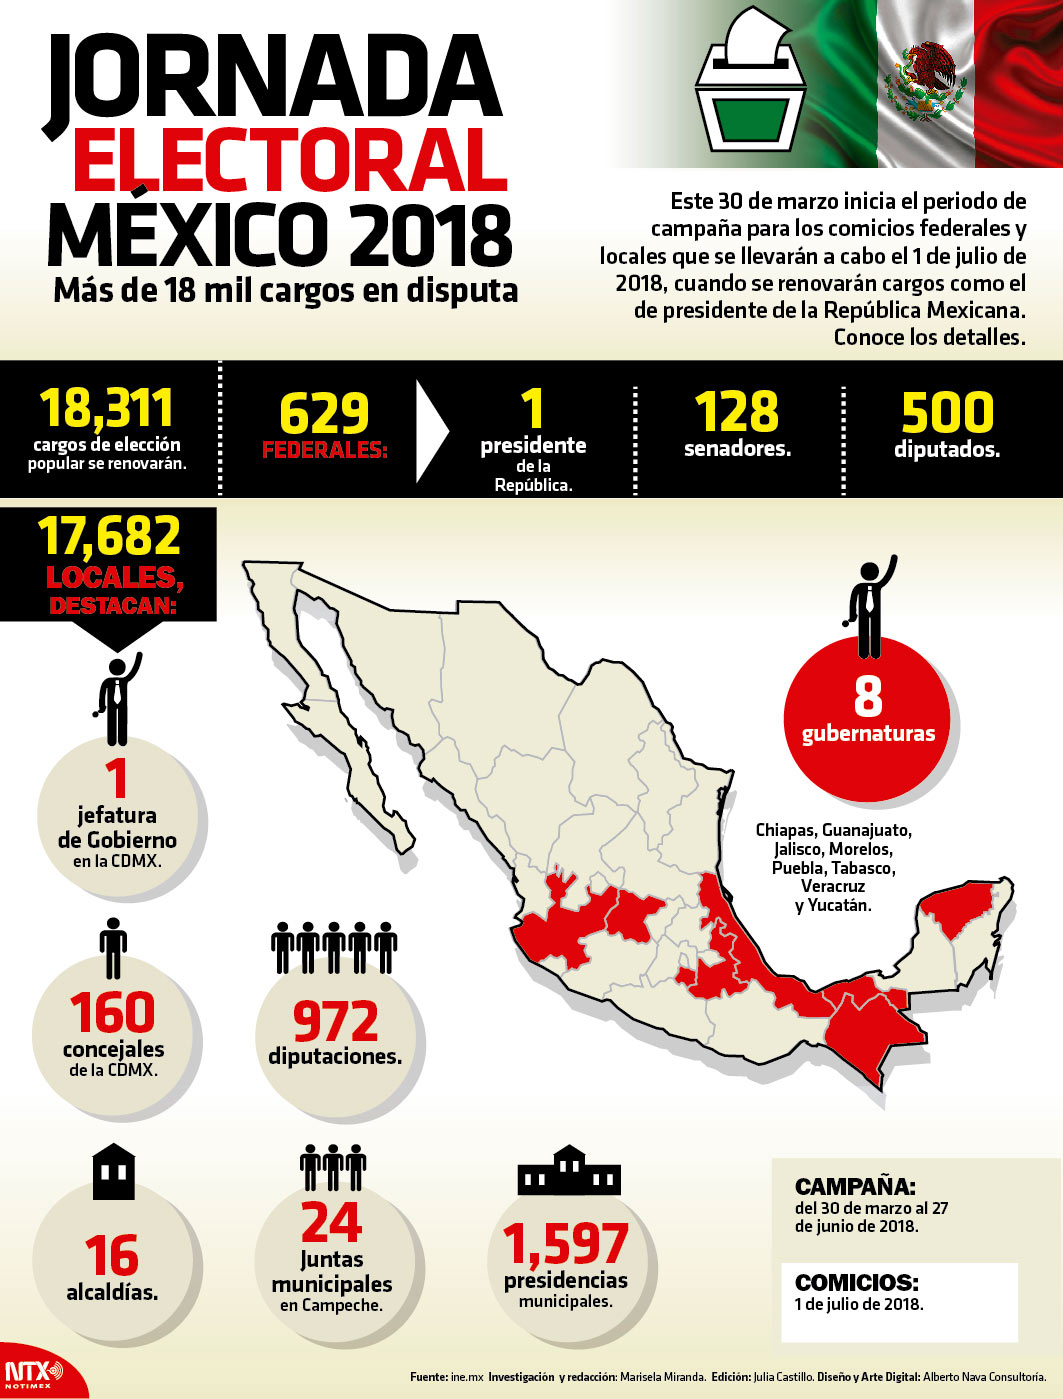 Jornada electoral Mxico 2018